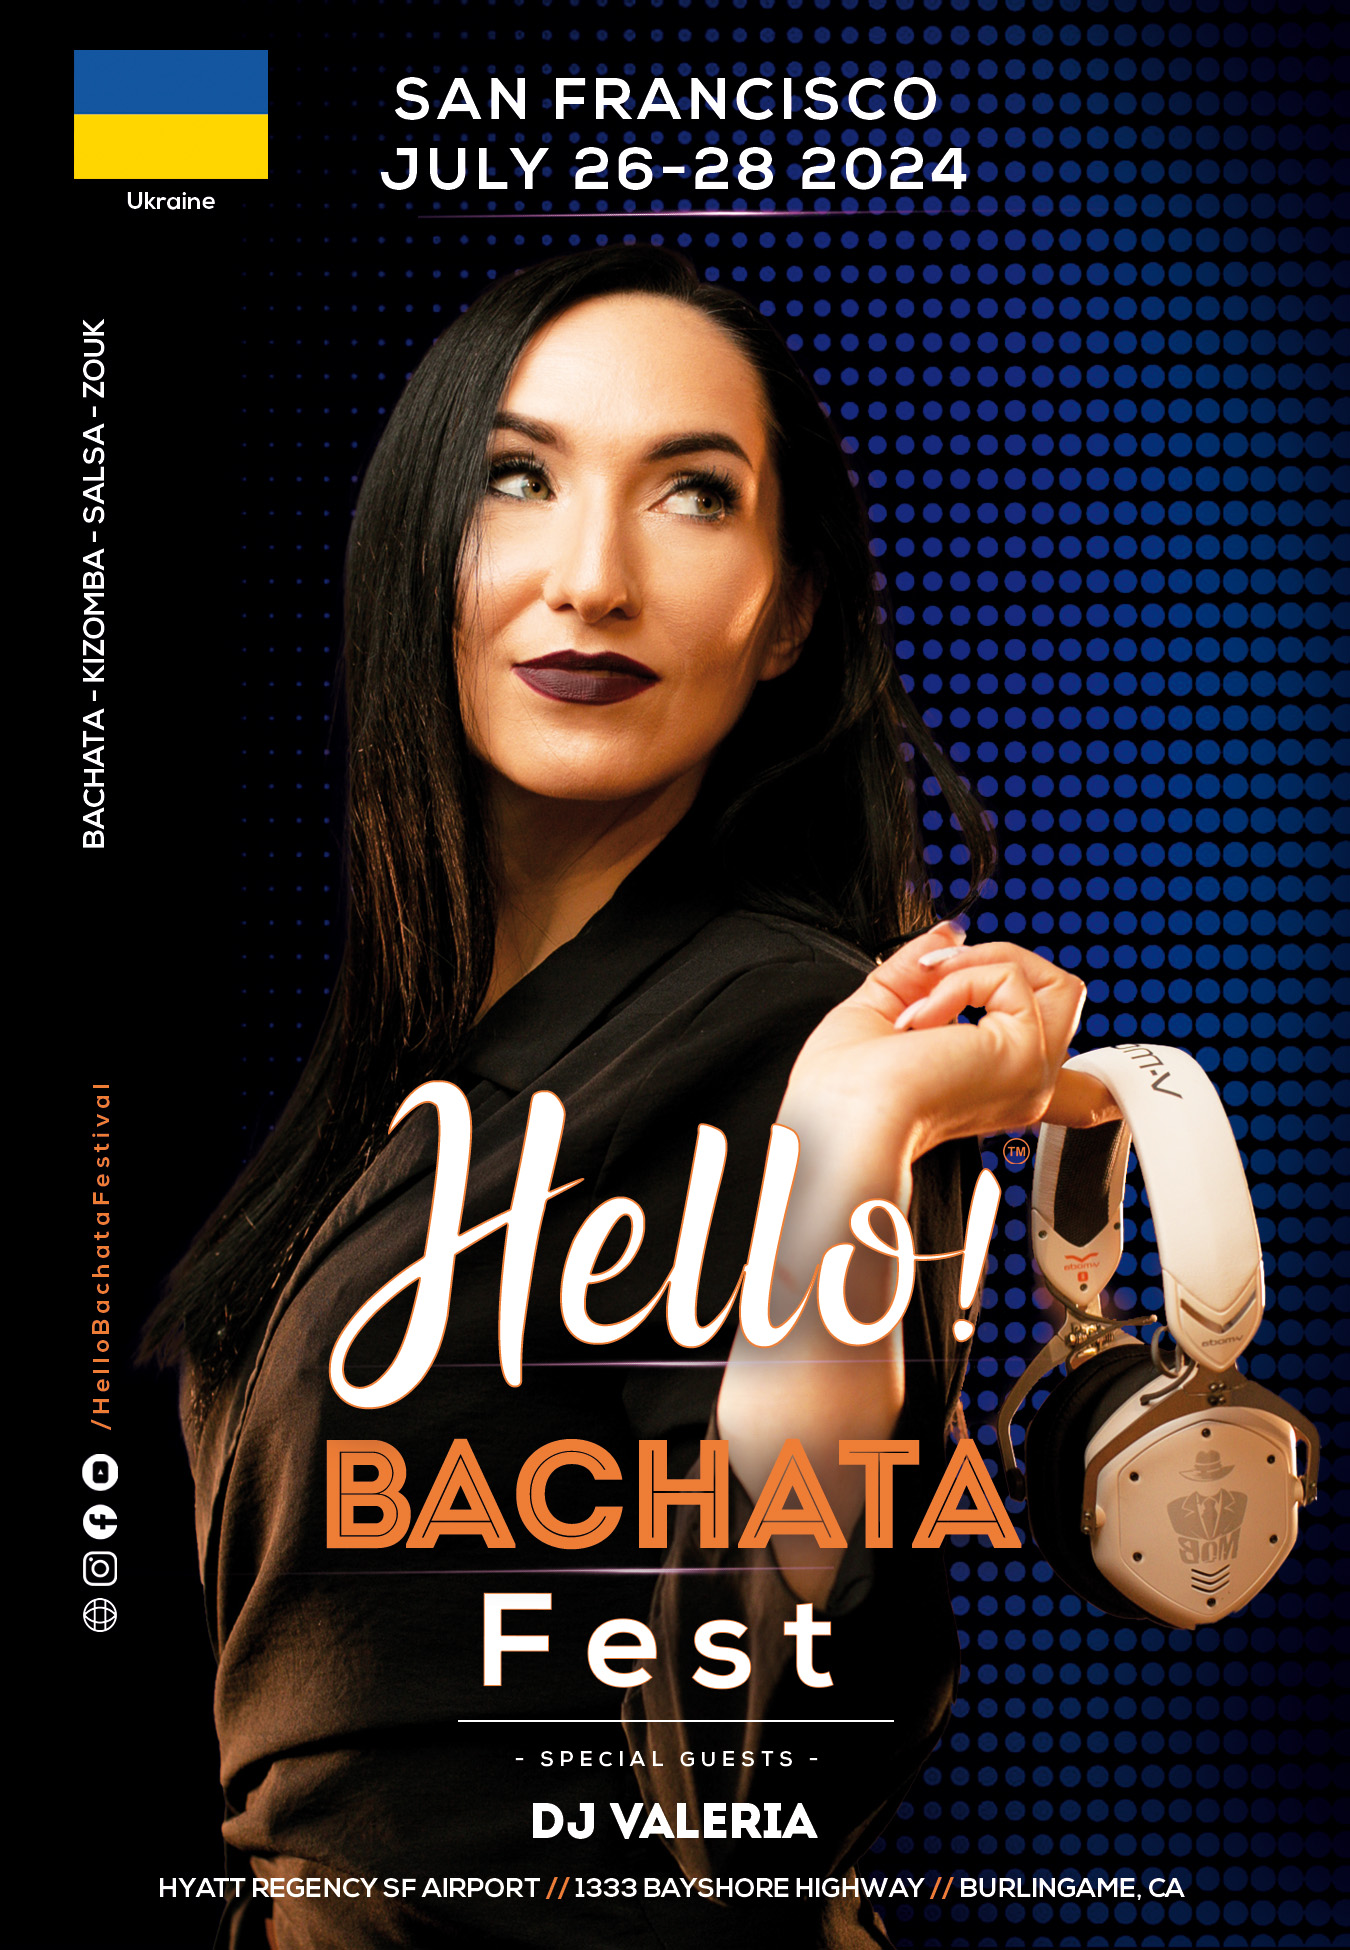 Hello Bachata Fest - DJ Valeria - Ukraine - Bachata